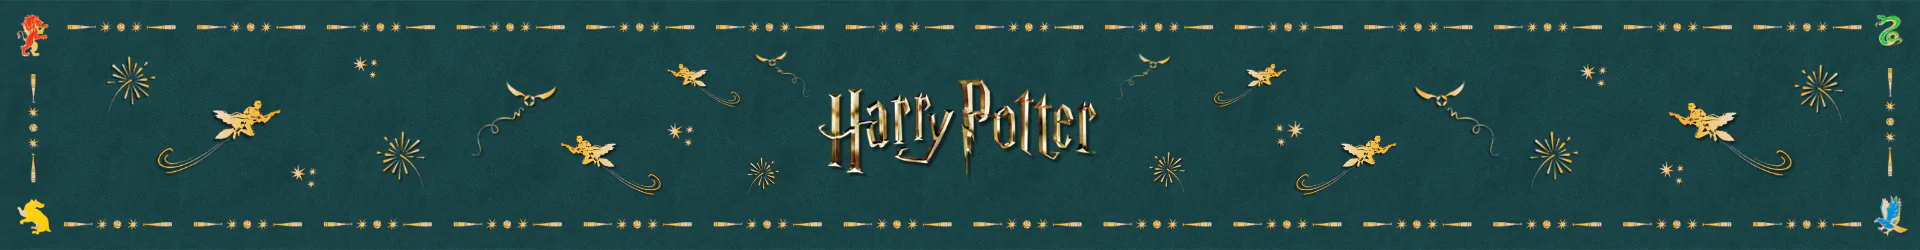 Harry Potter taschen banner